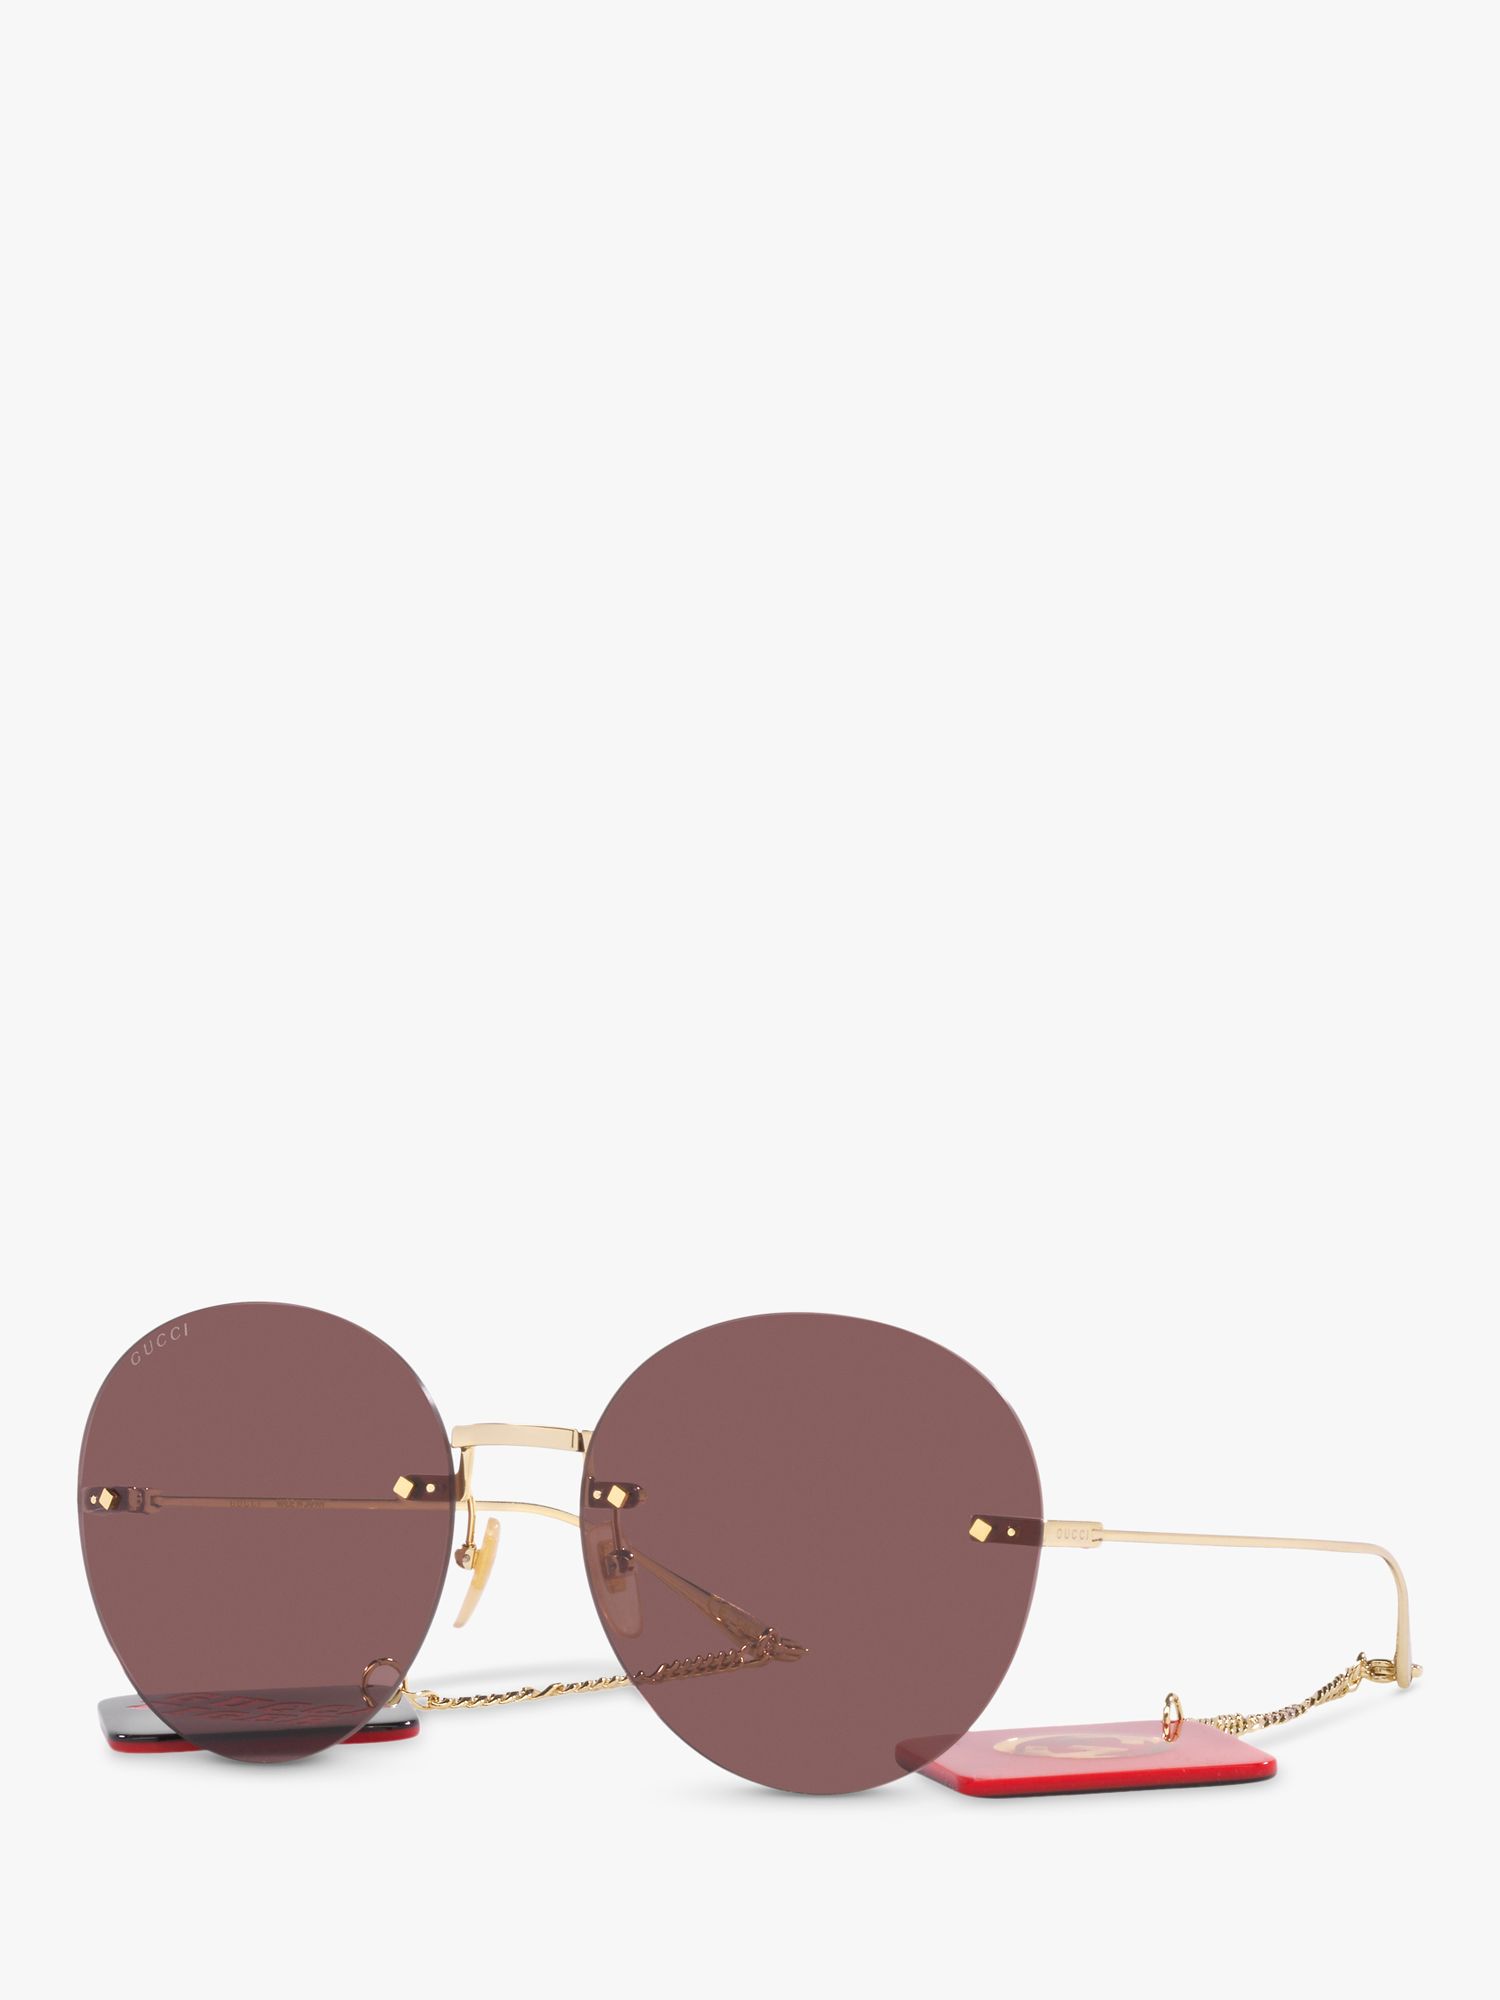 Chanel Round Sunglasses Chain, Round Sunglasses Women Luxury